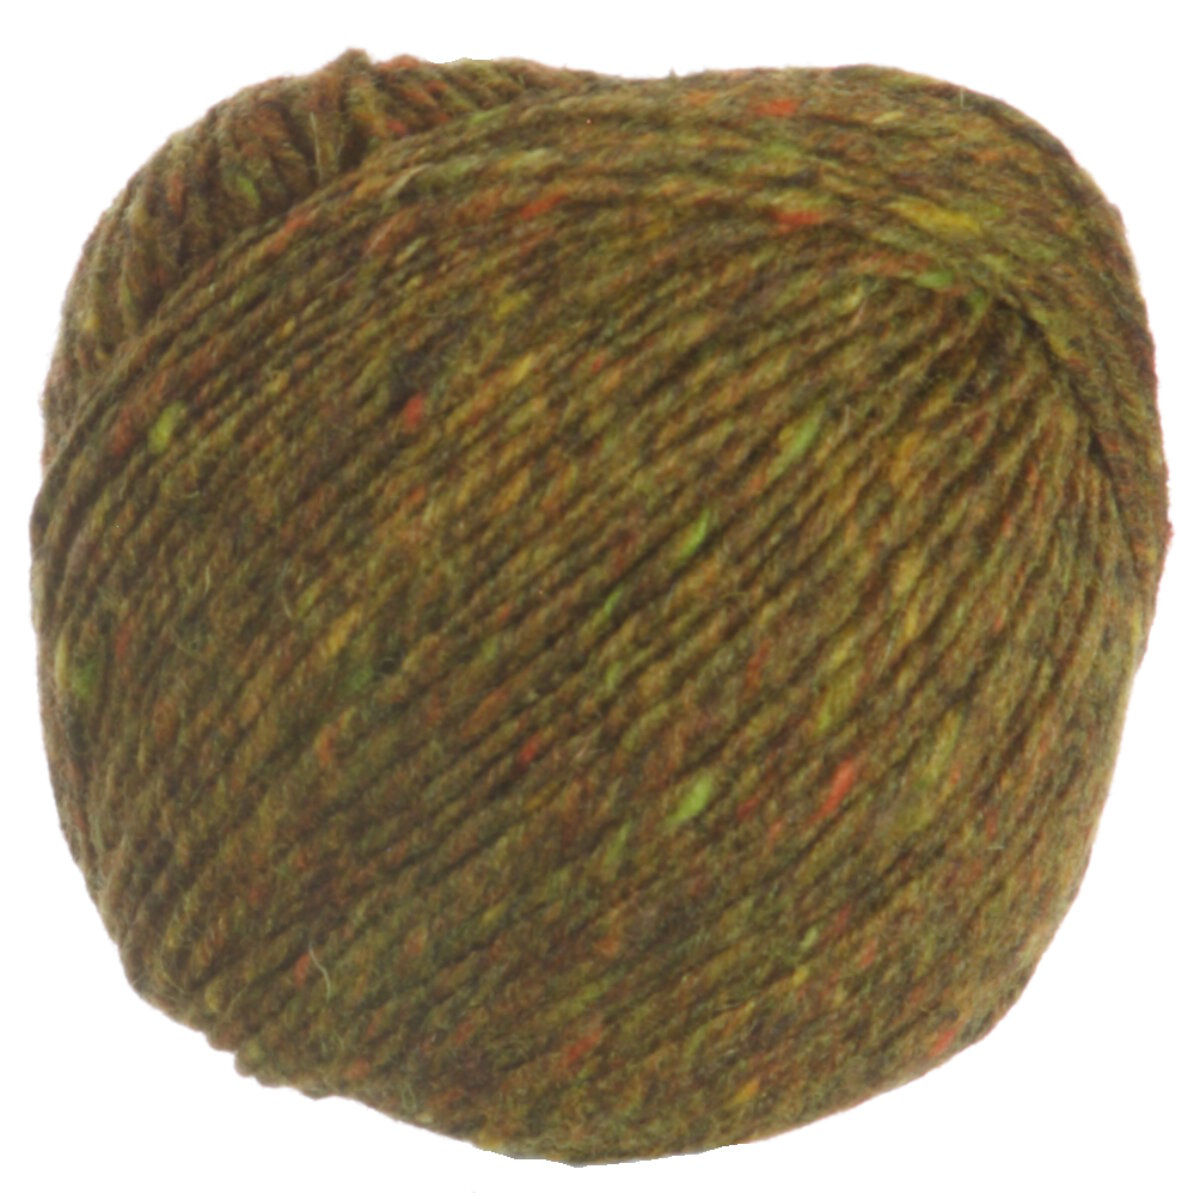 Fine Tweed Yarn - 372 Reeth at Beans Wool